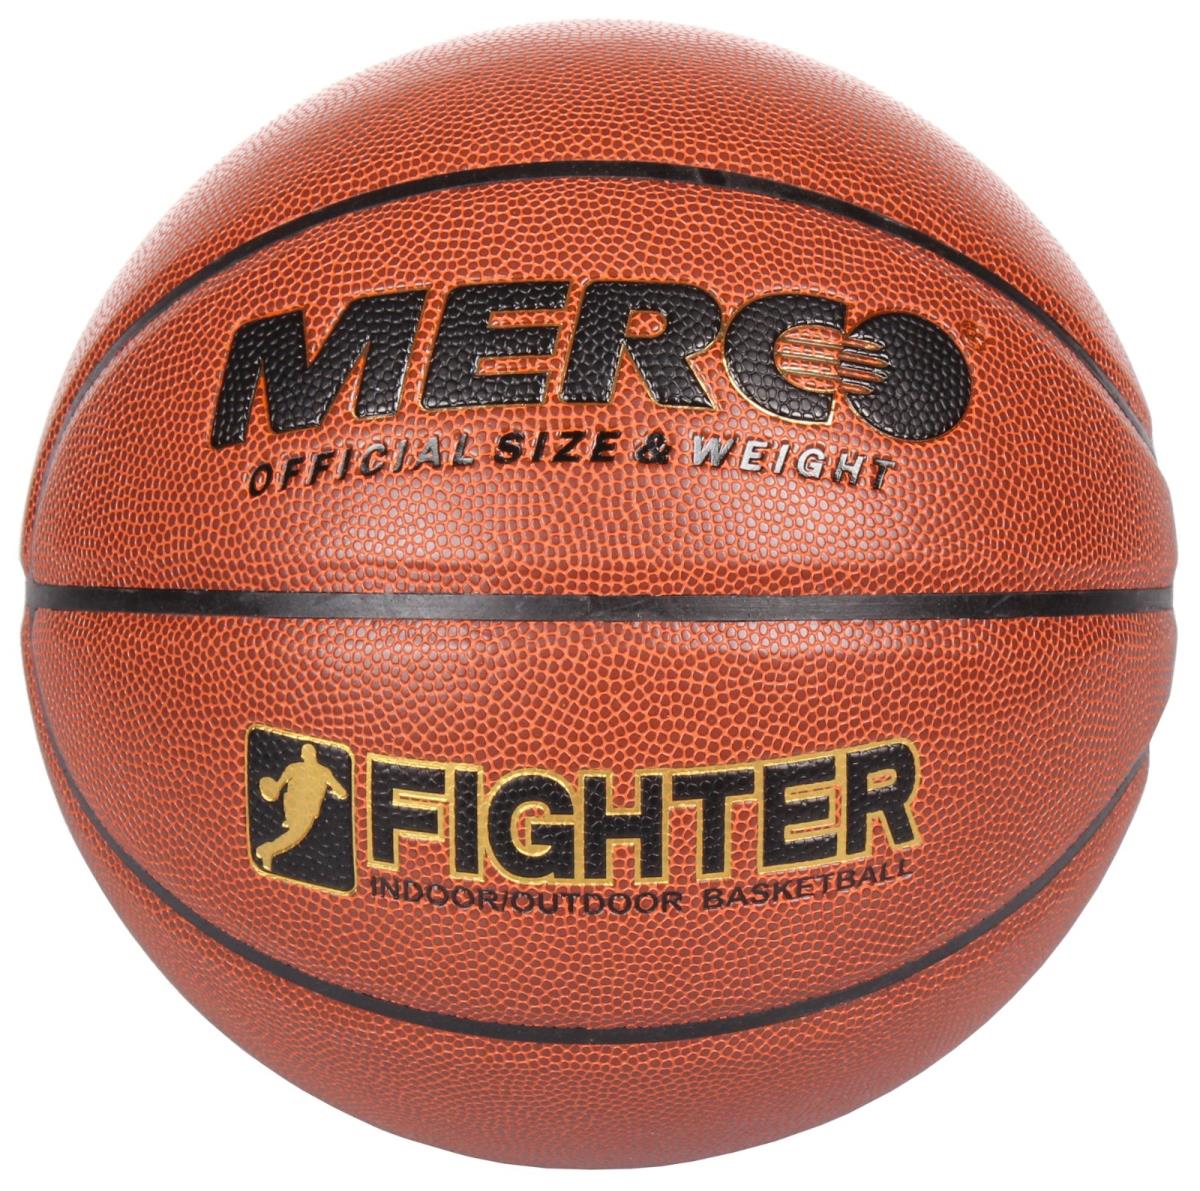 Basketbalová lopta Merco Fighter